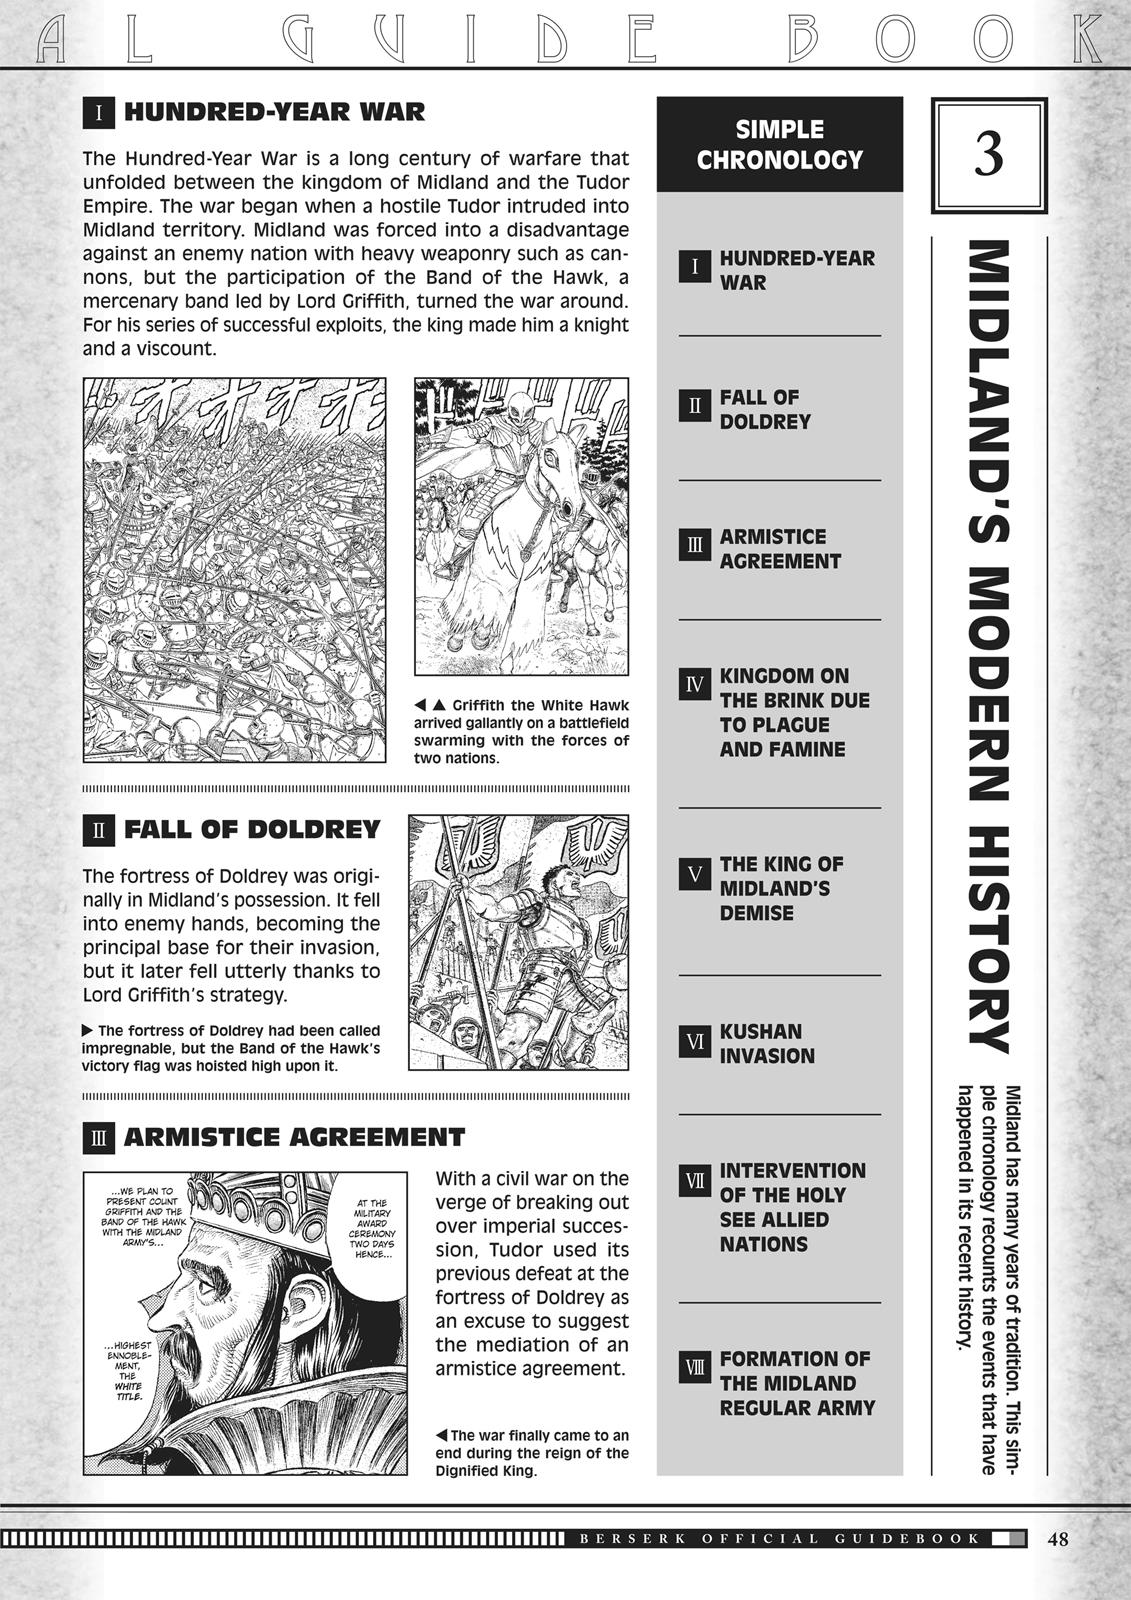 Berserk Manga Chapter 350.5 image 048